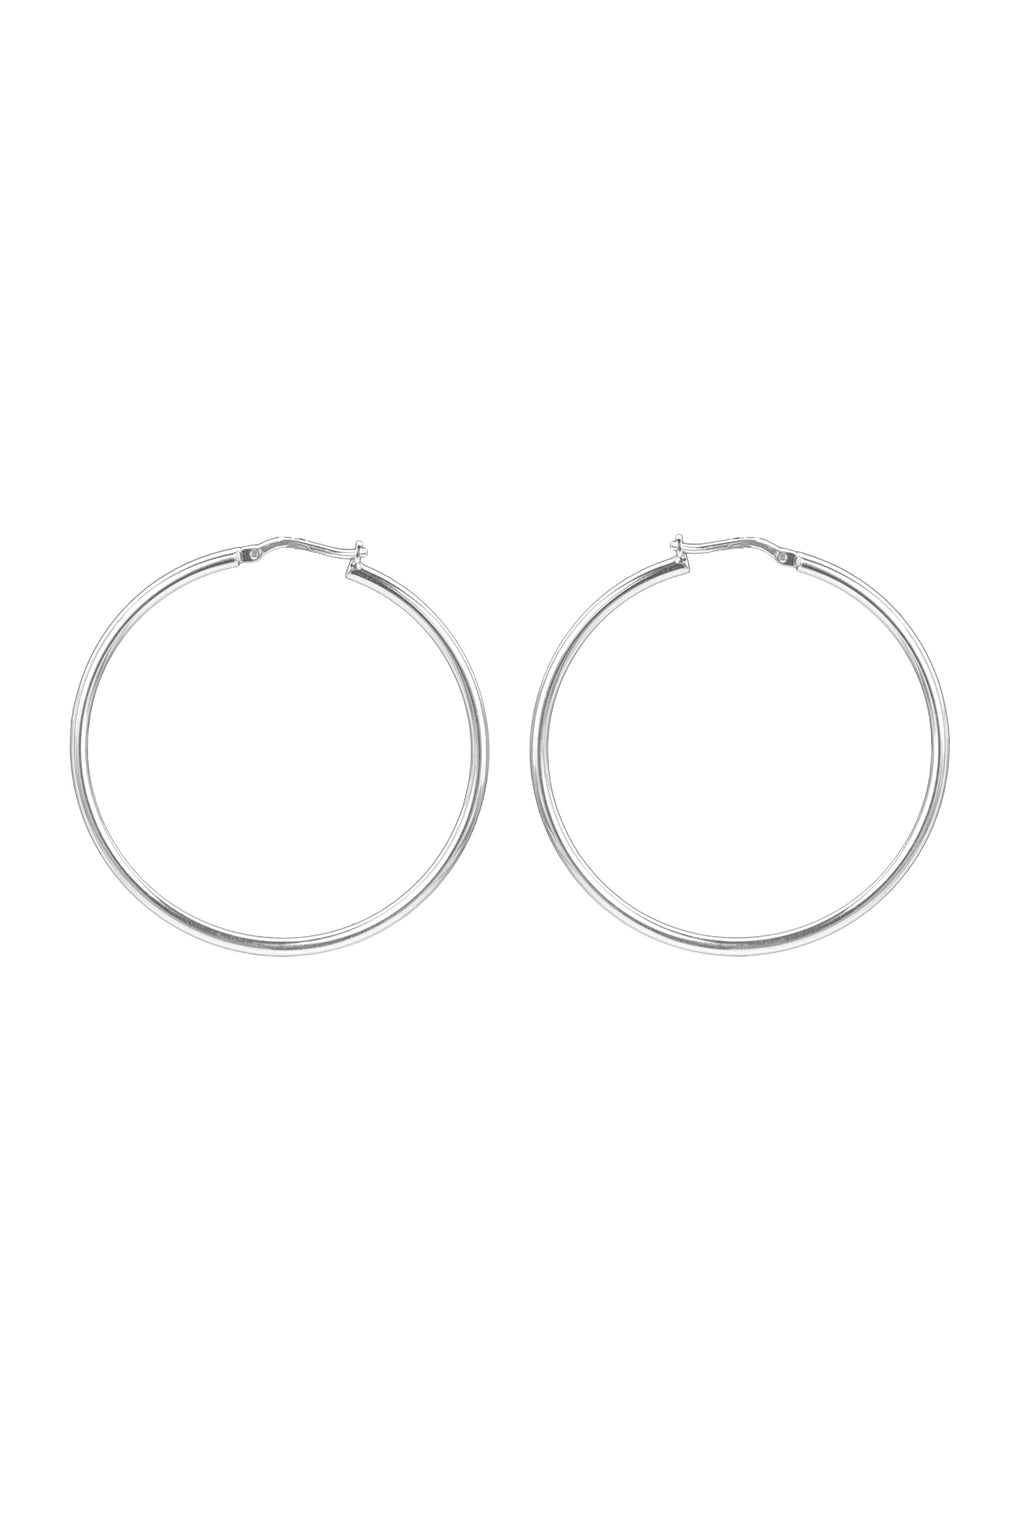 Silver large hoop earrings